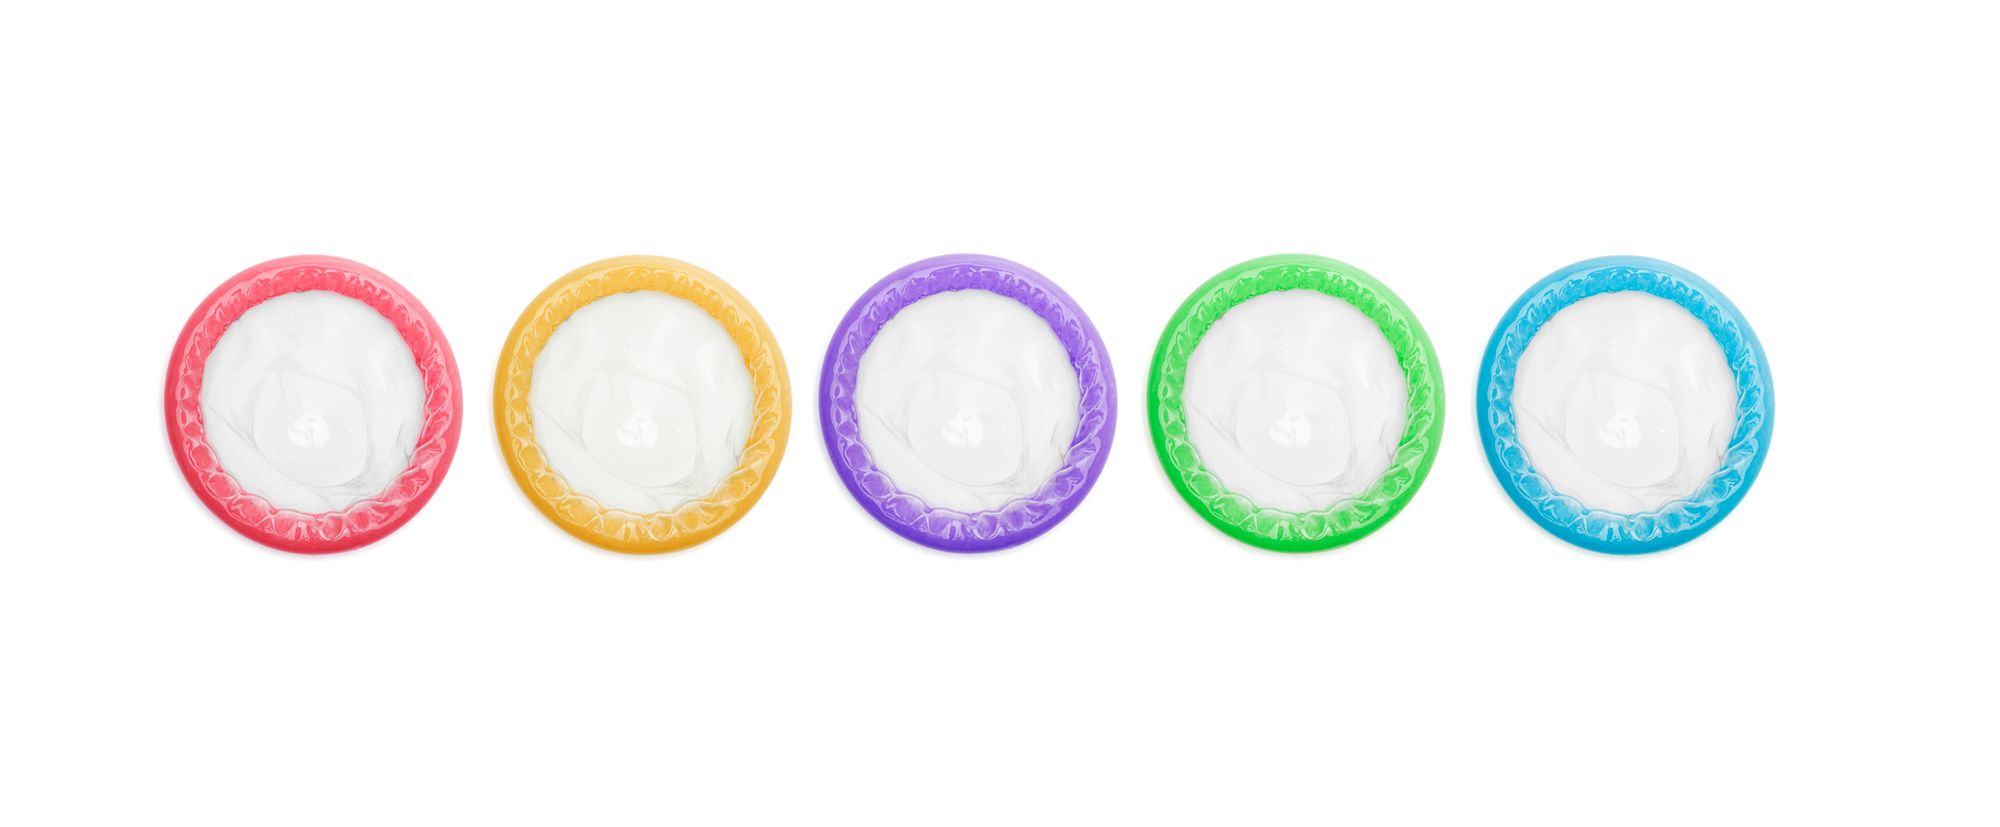 Verschiedenfarbige Kondome liegen in einer Reihe nebeneinander